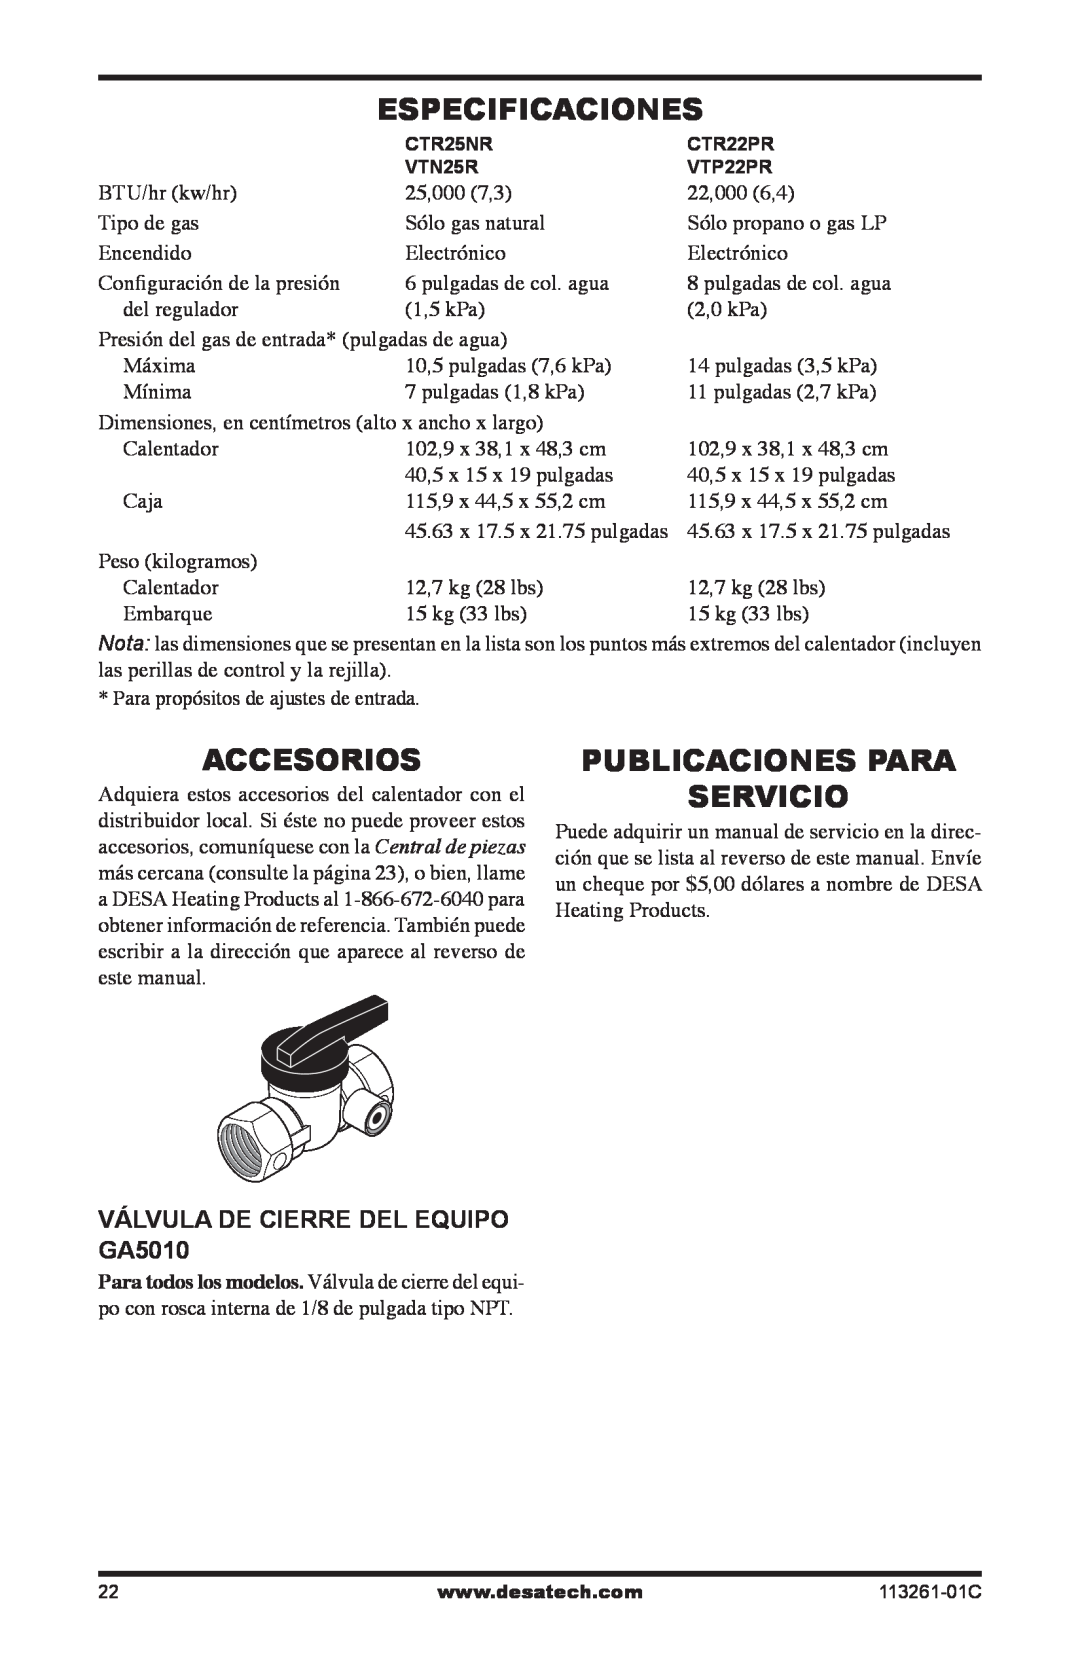 Desa VTP22R, VTN25R Especificaciones, Accesorios, Publicaciones Para Servicio, VÁLVULA DE CIERRE DEL EQUIPO GA5010 